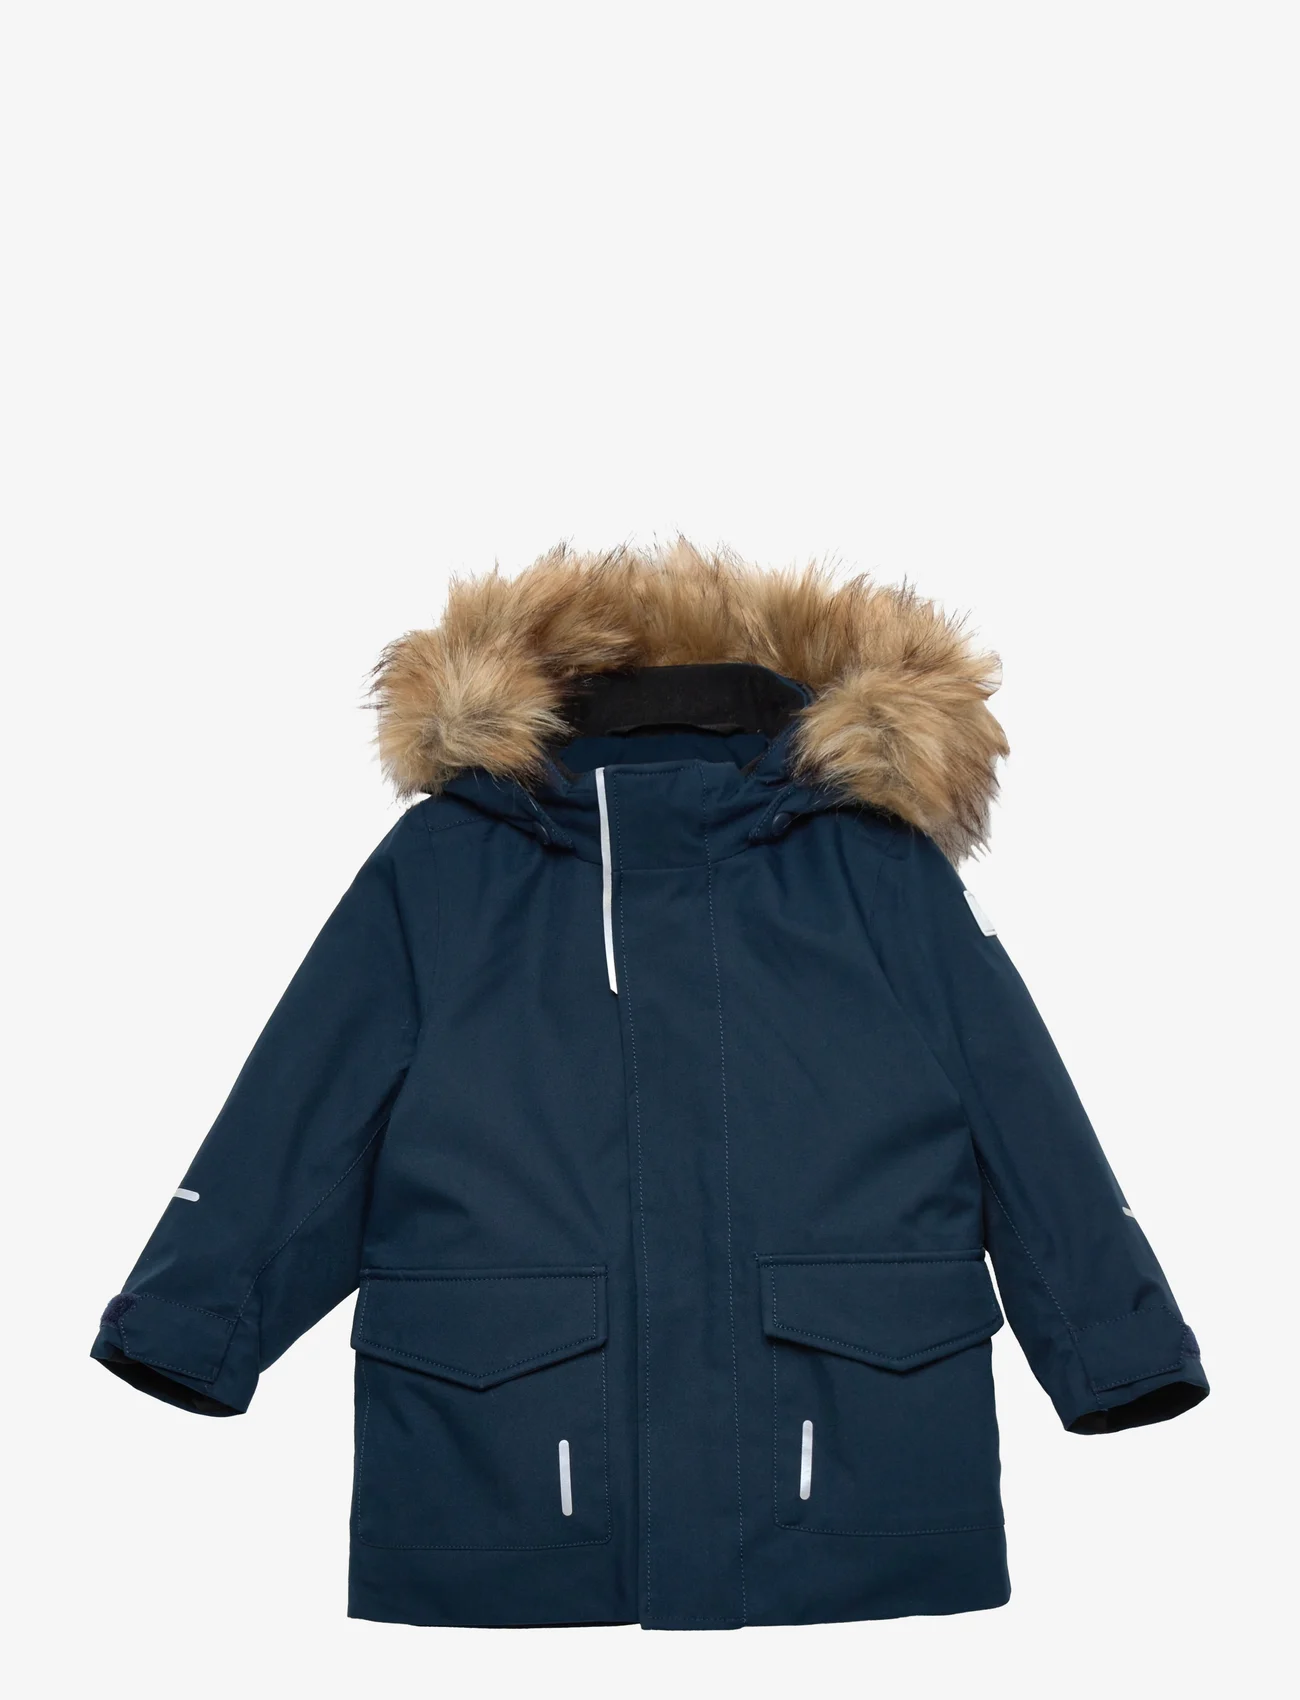 Reima - Reimatec winter jacket, Mutka - parkas - navy - 0